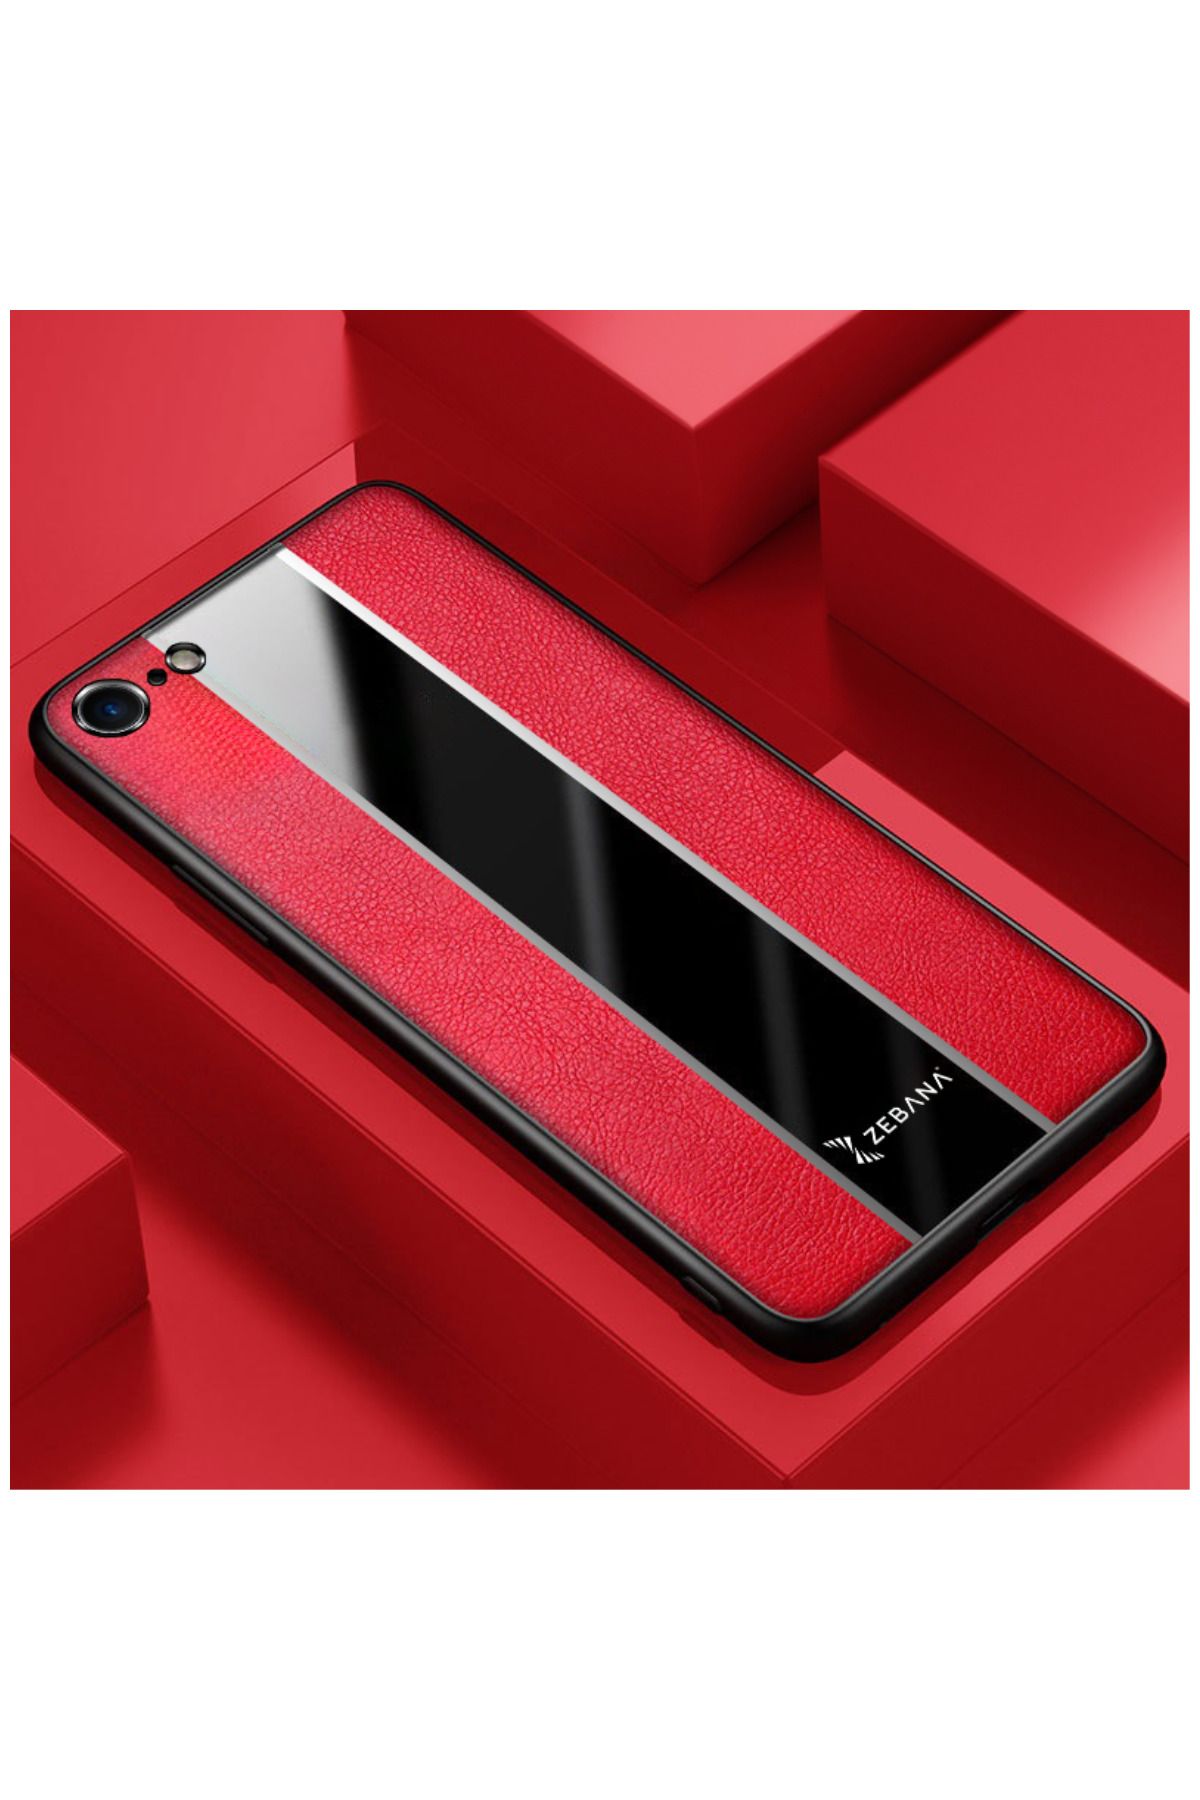 Zebana Apple Iphone Se 2020 Uyumlu Kılıf Premium Deri Kılıf Kırmızı